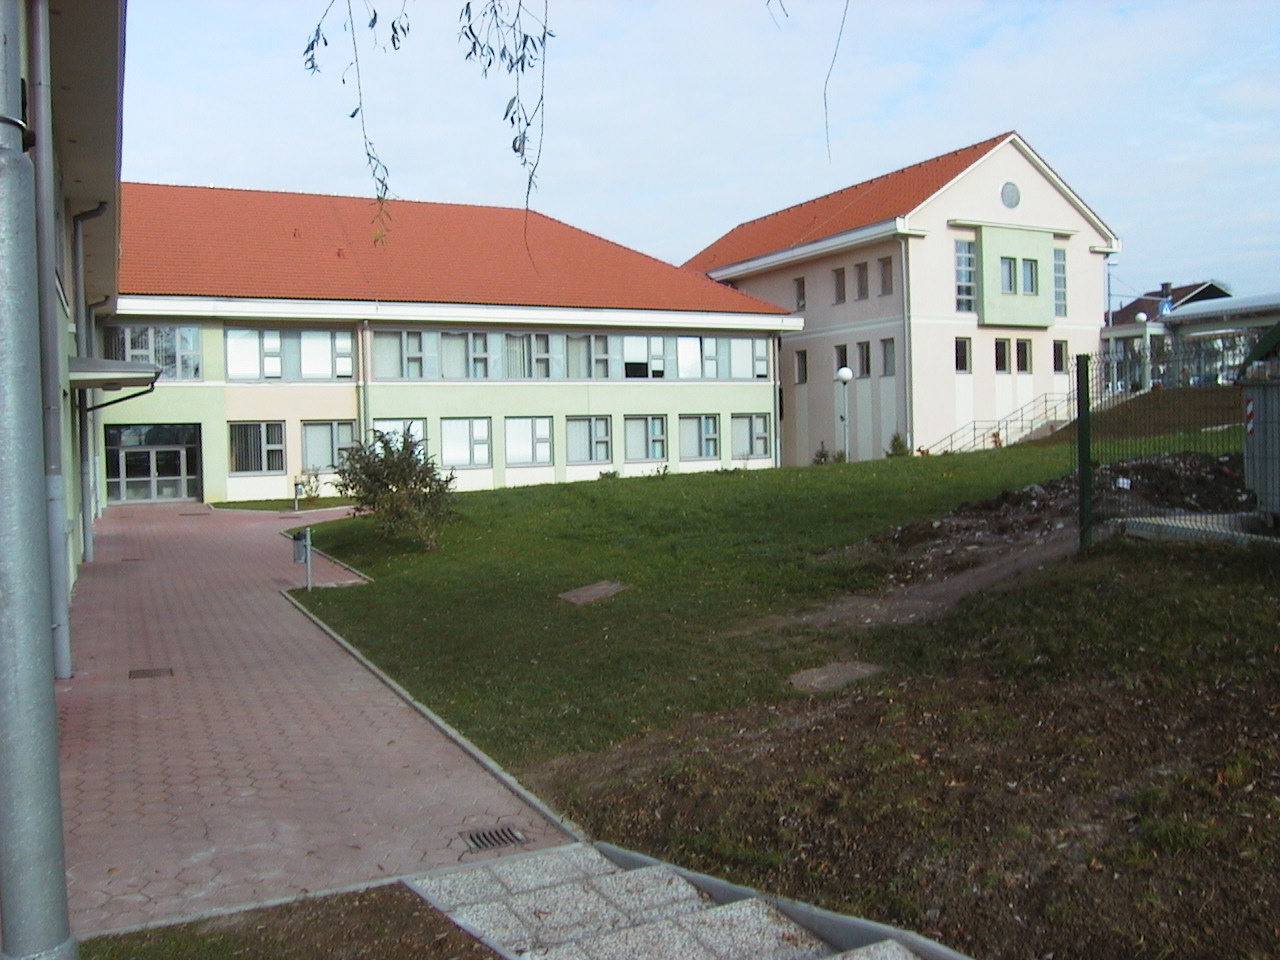 New Primary school Ljubečna near Celje